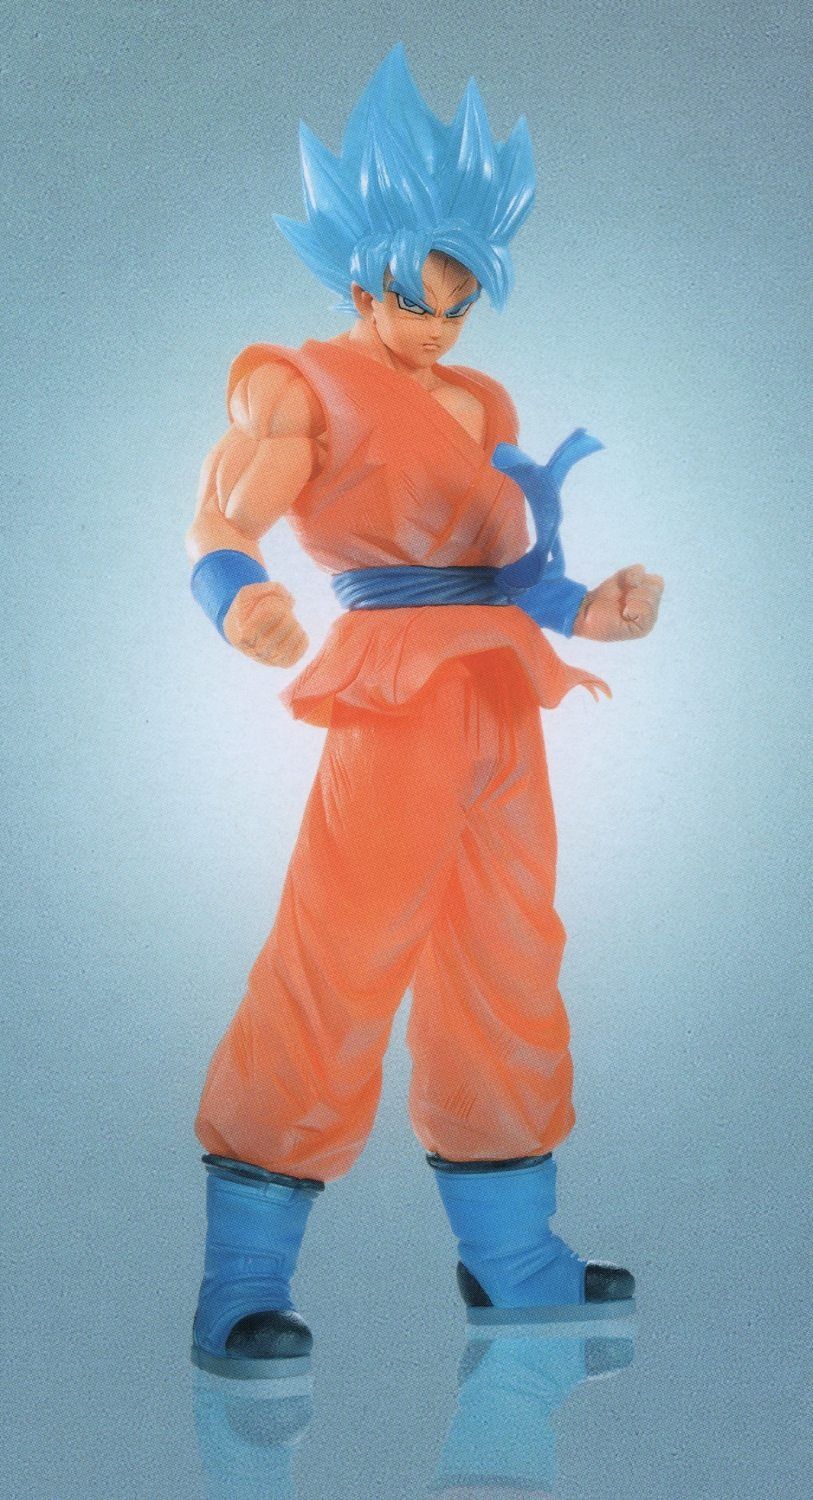 Dragon Ball Super - Super Saiyan God Super Saiyan Son Goku Figure Clearise